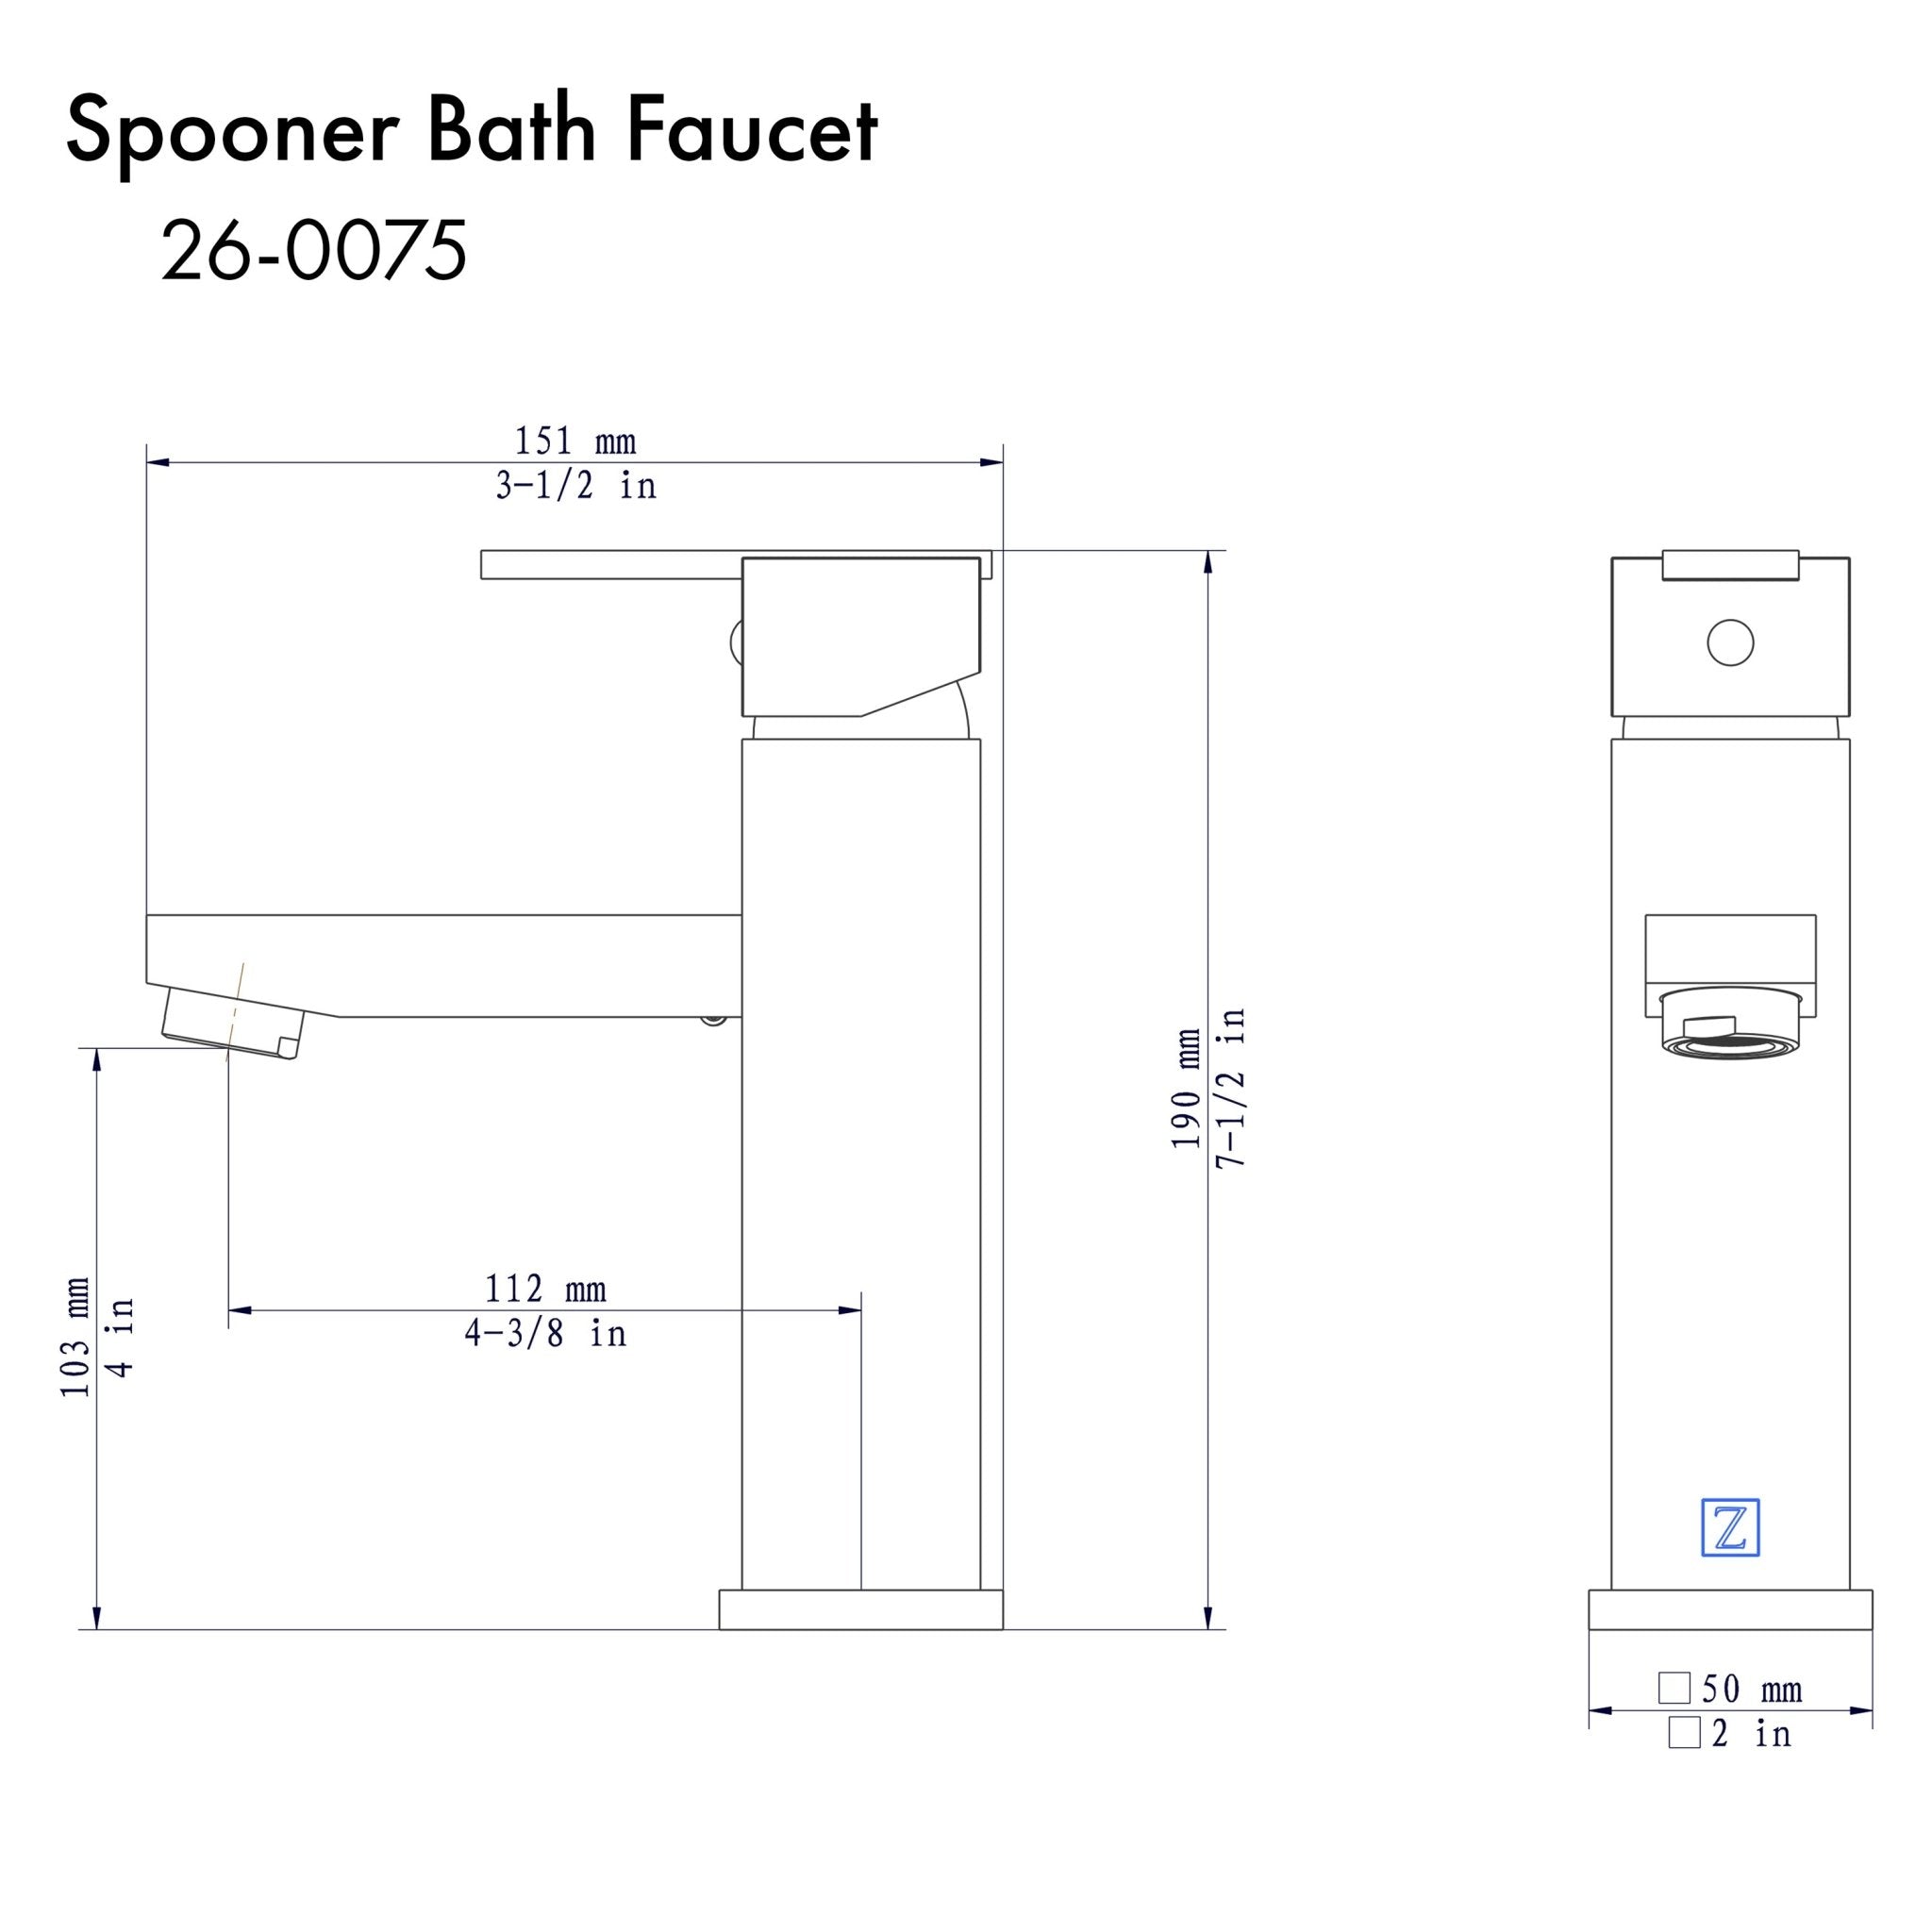 ZLINE Spooner Bath Faucet in Electric Matte Black, SPN-BF-MB